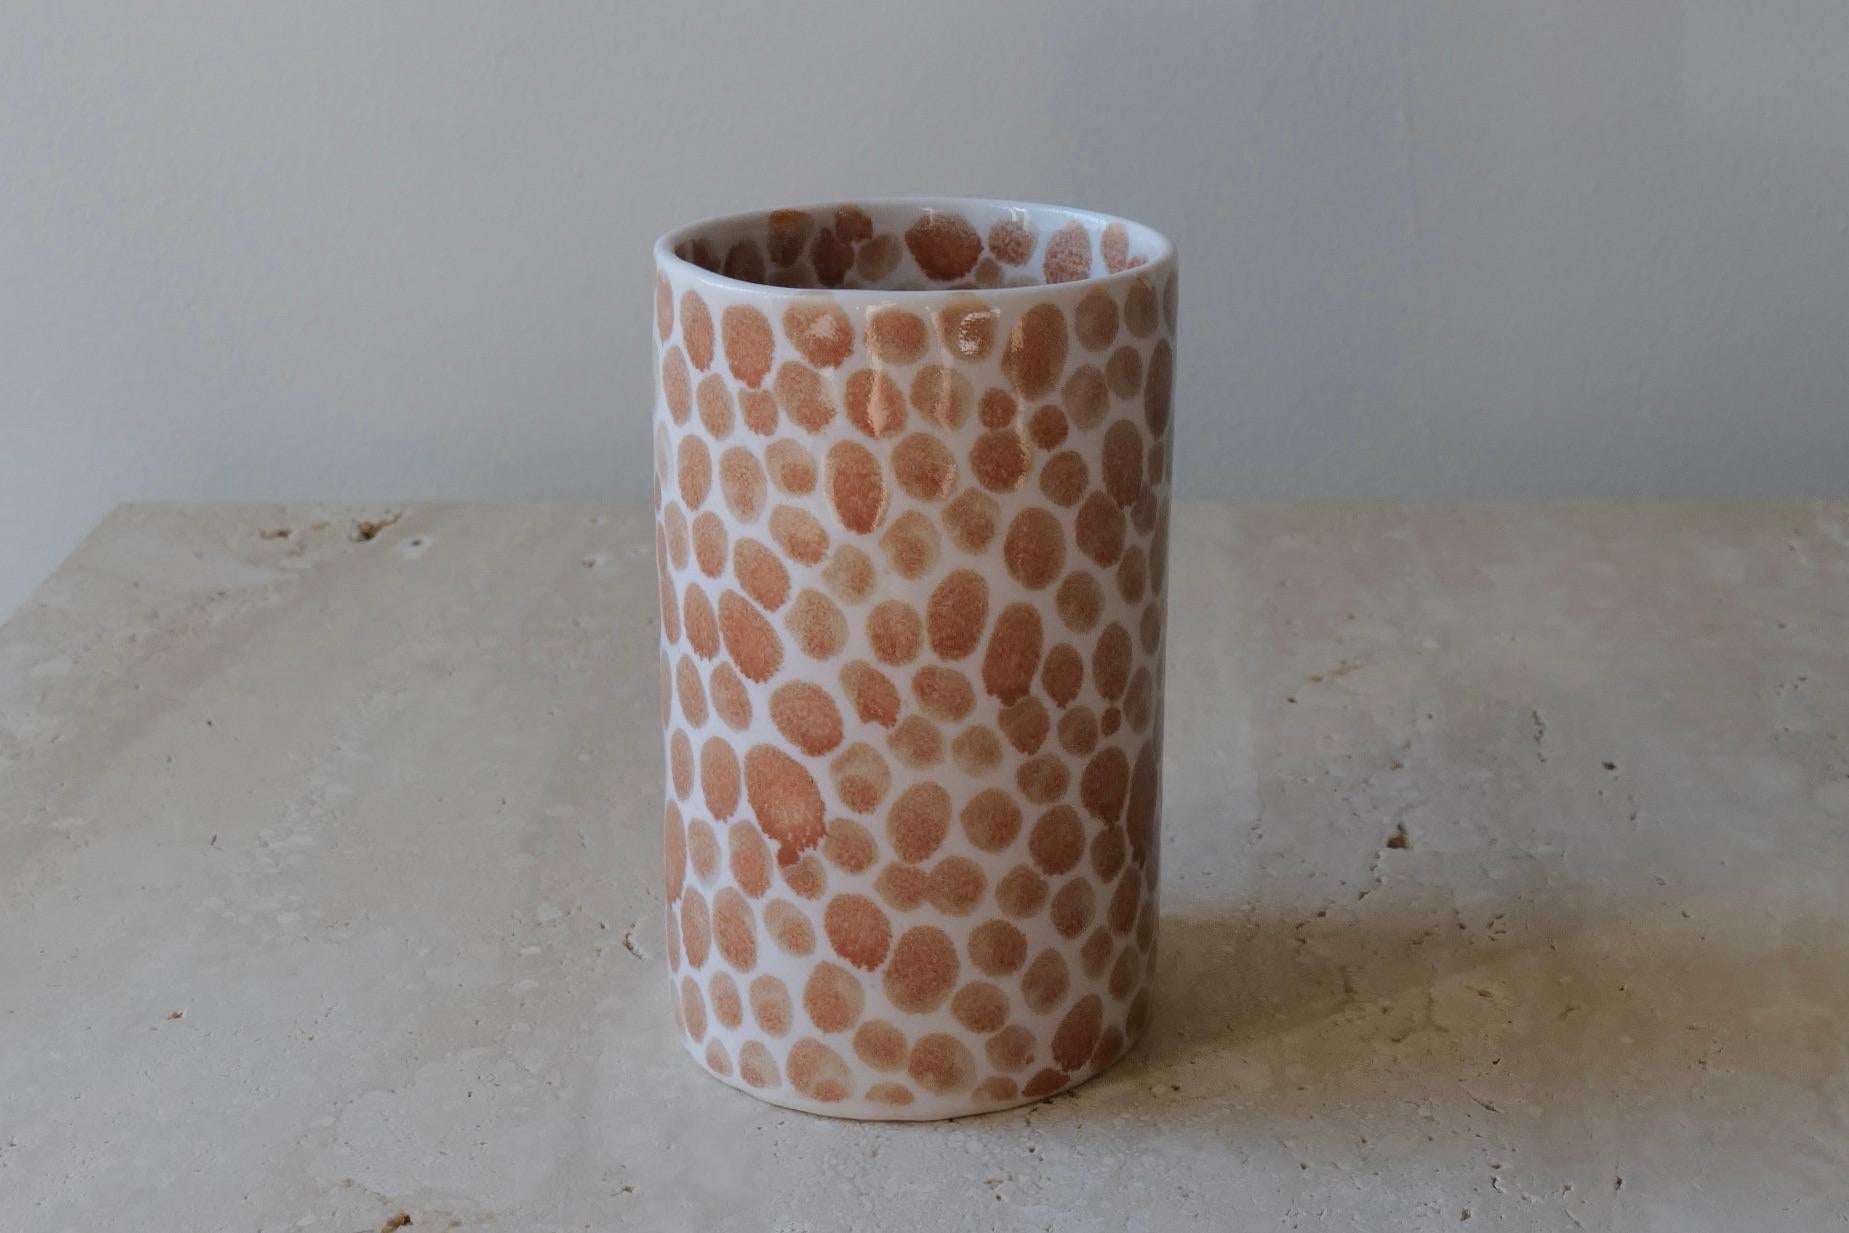 Minimalist Tan Dots Porcelain Tall Cup by Lana Kova